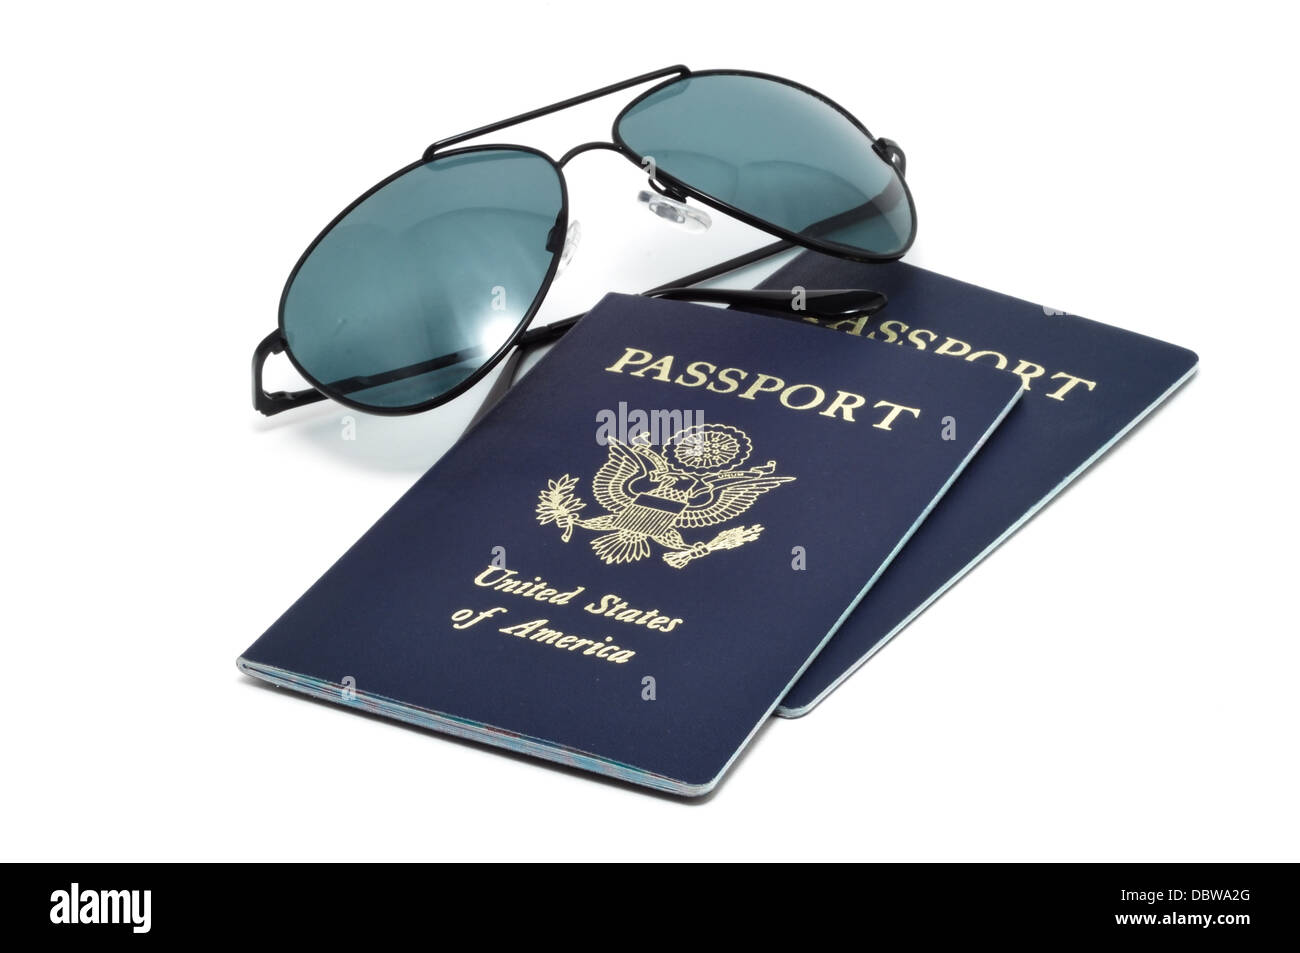 Etats-unis d'Amérique deux passeports et lunettes de soleil - Locations / maison de vacances concept Banque D'Images